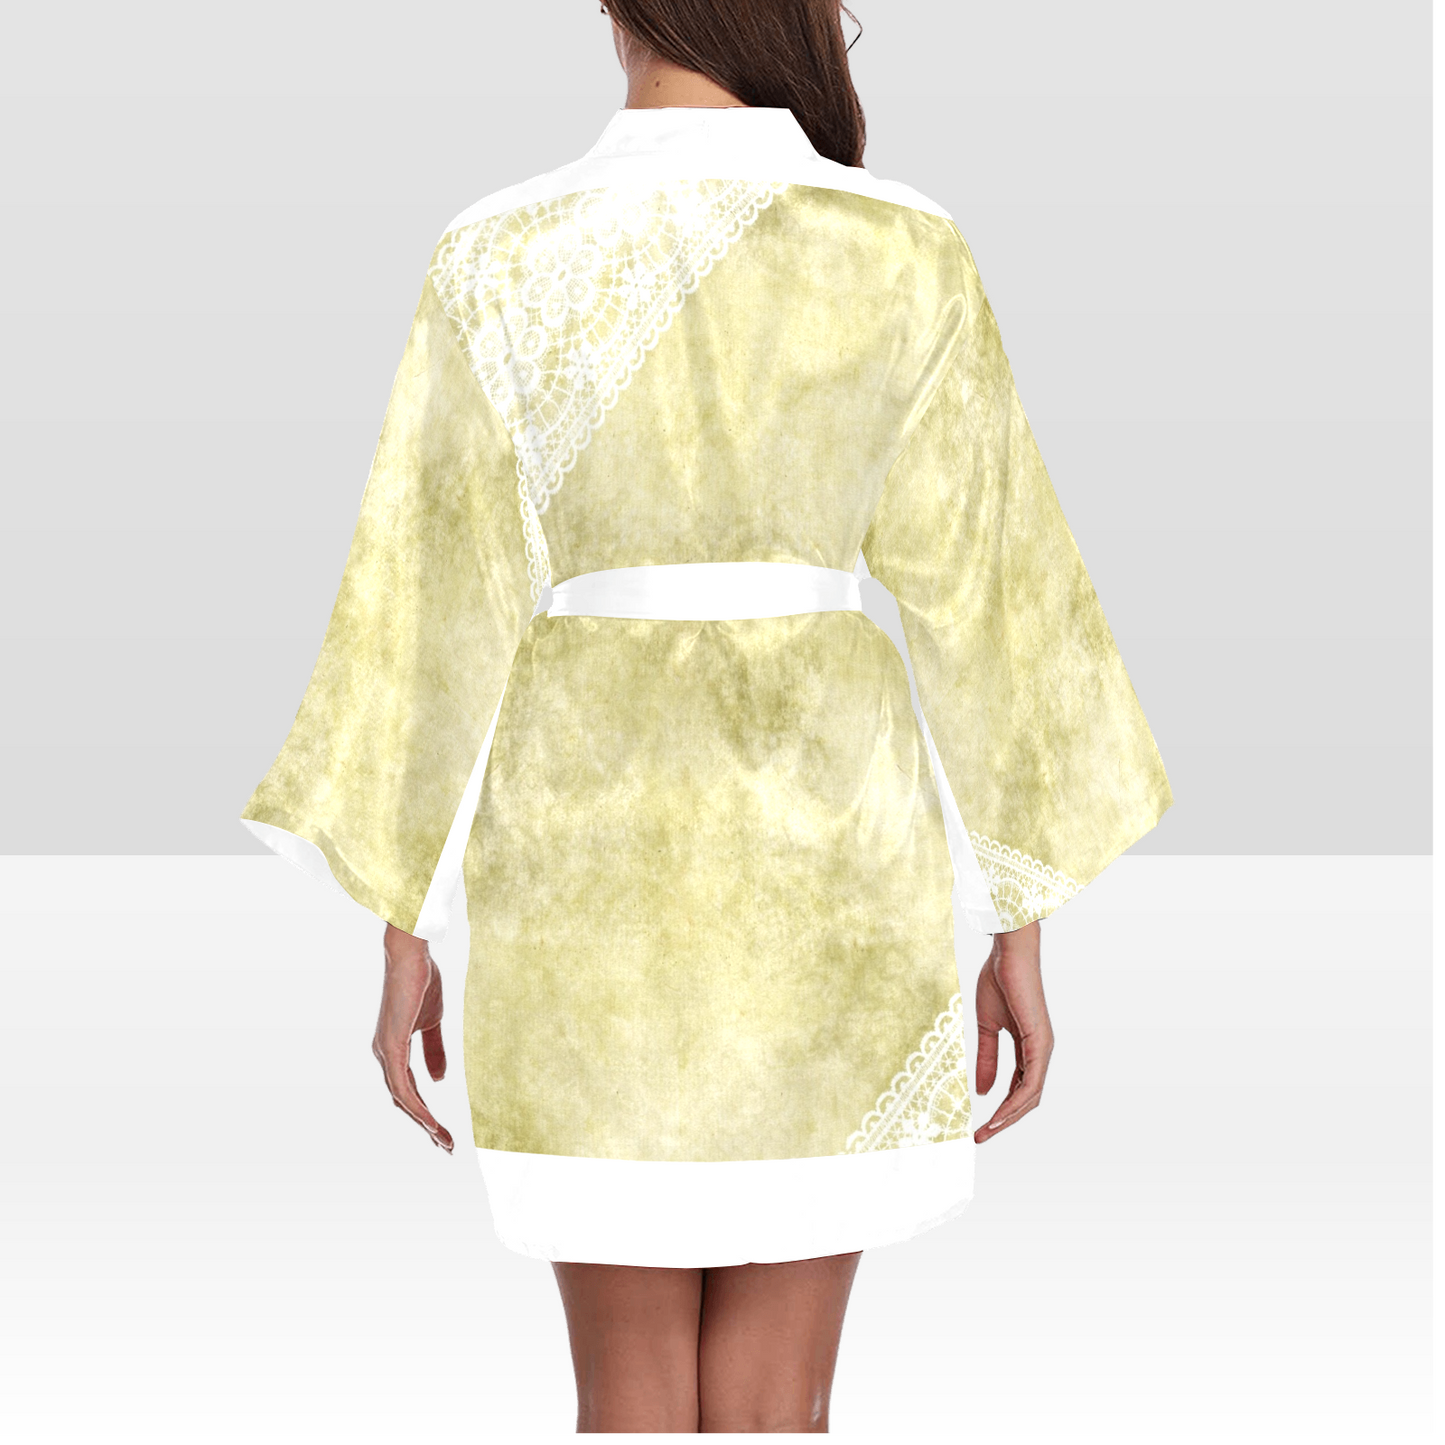 Victorian Lace Kimono Robe, Black or White Trim, Sizes XS to 2XL, Design 43